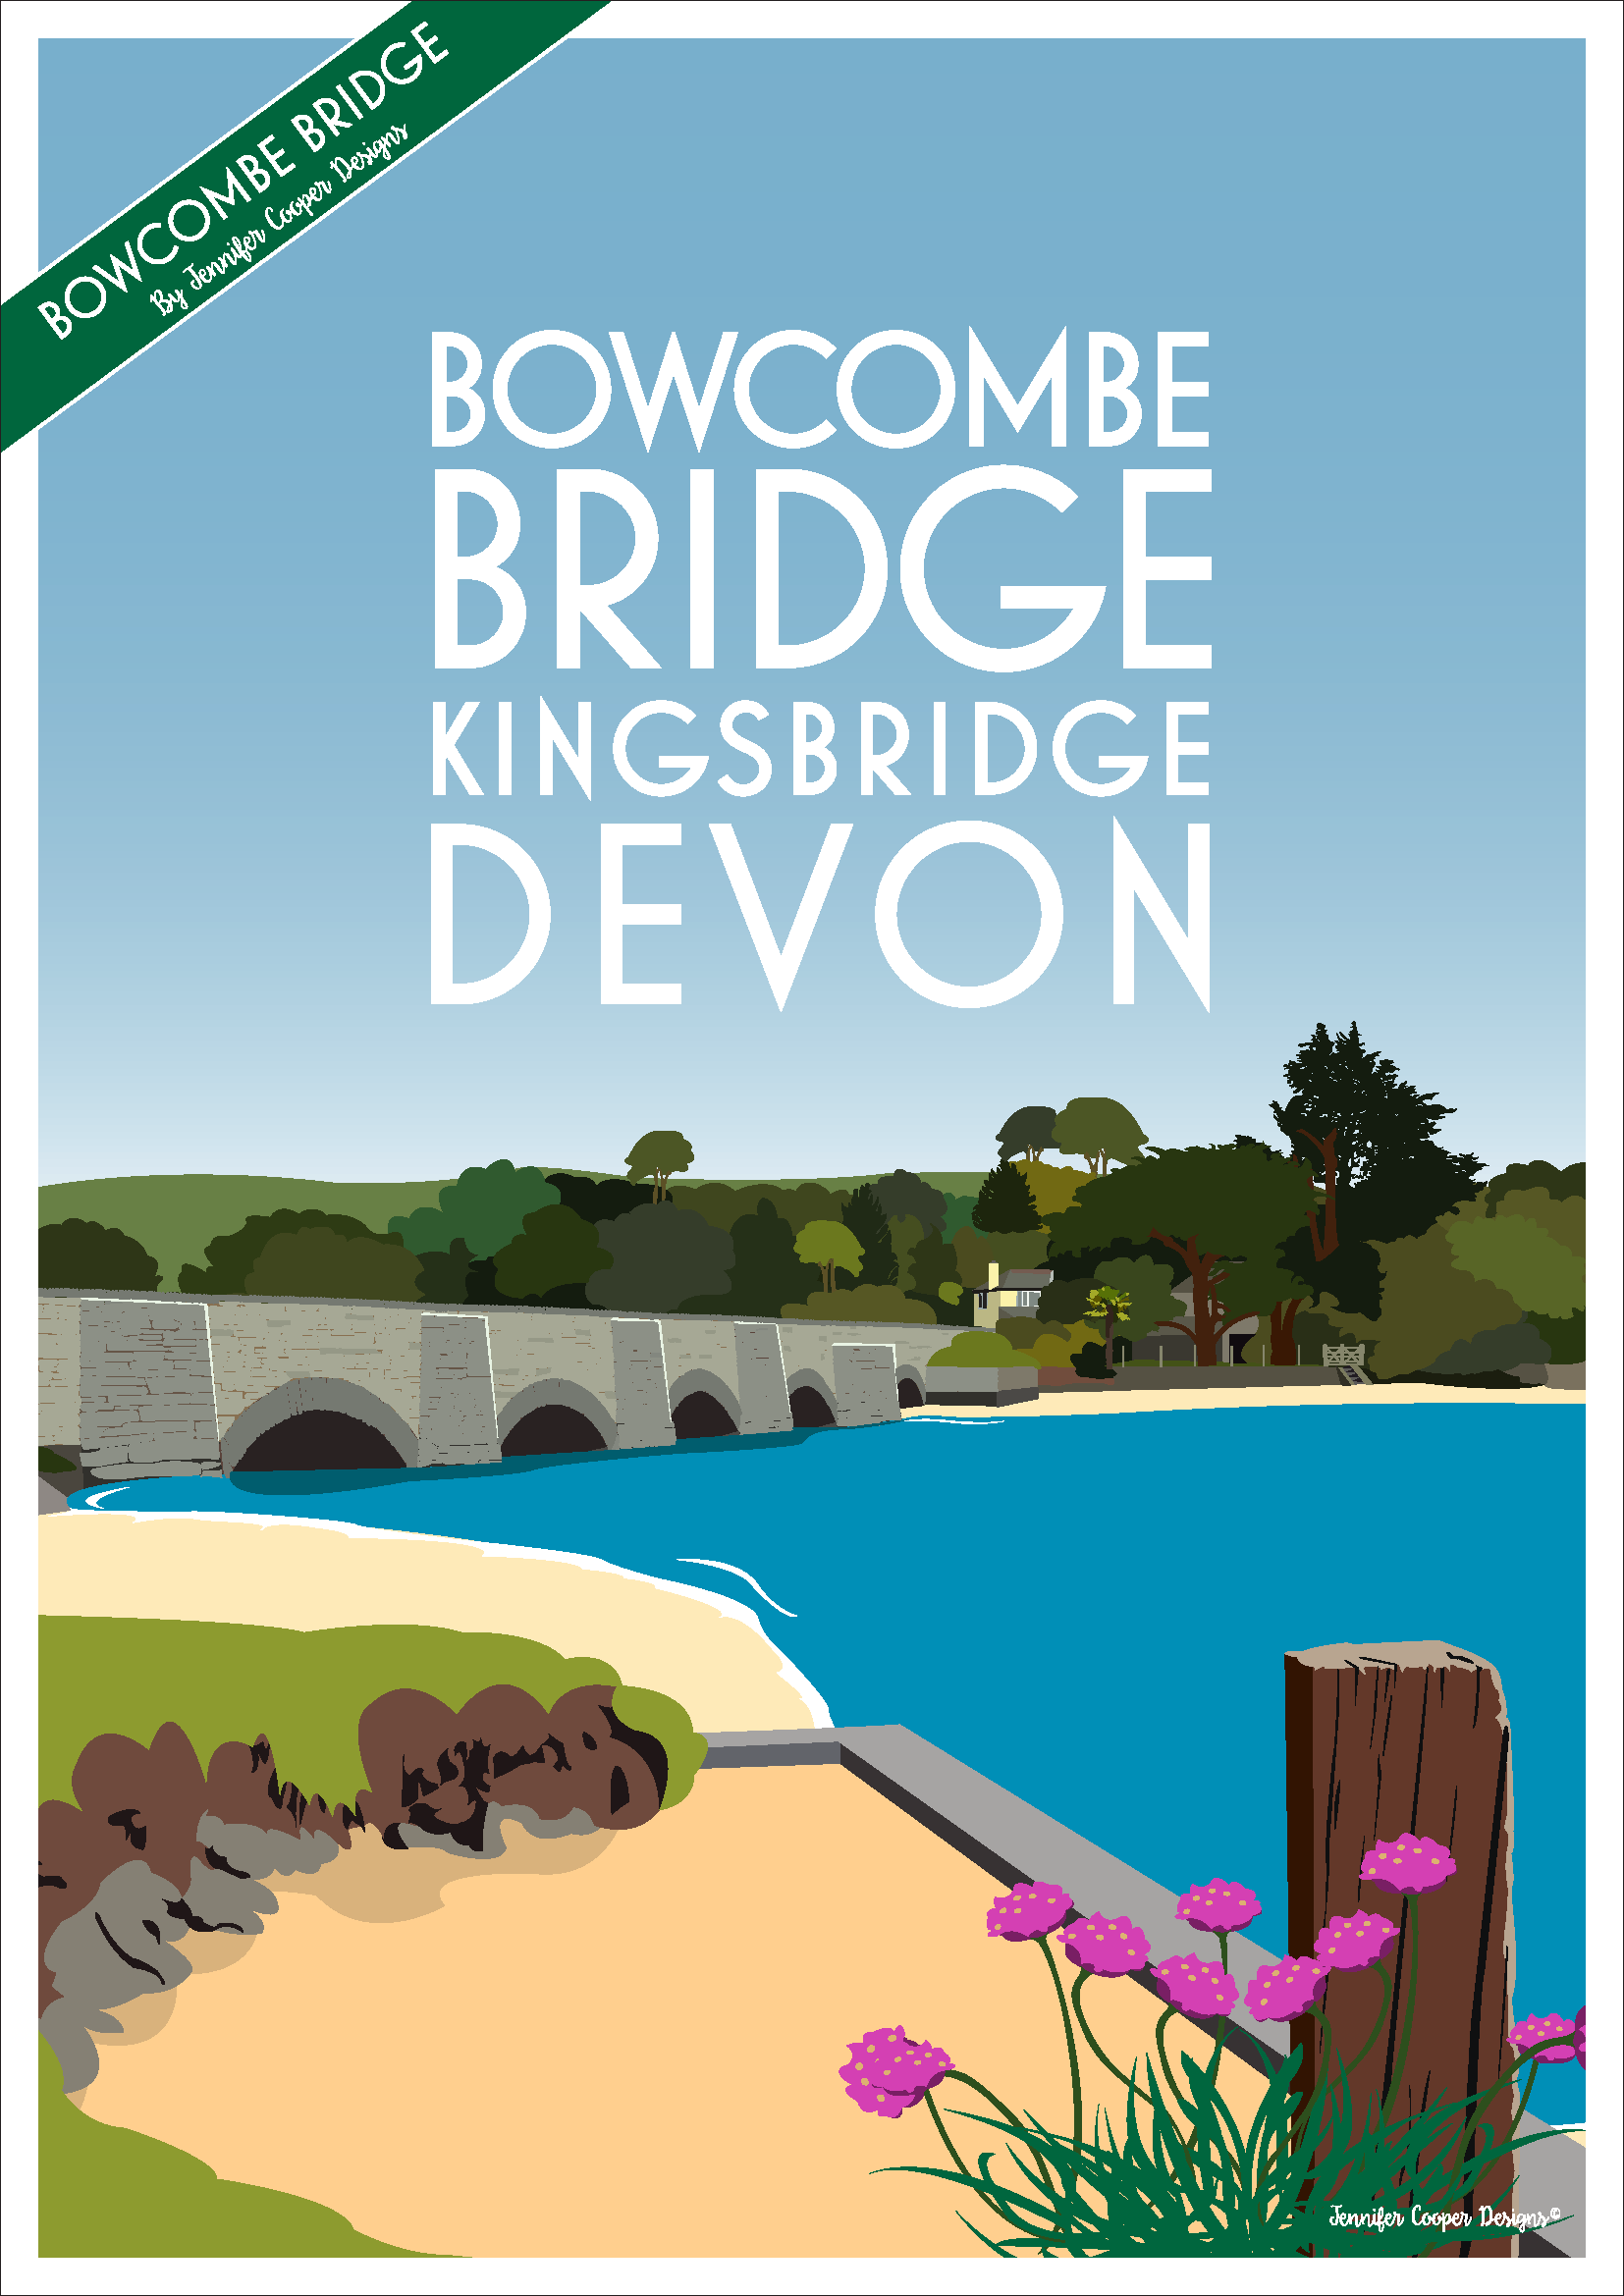 Bowcombe Bridge (New Bridge)